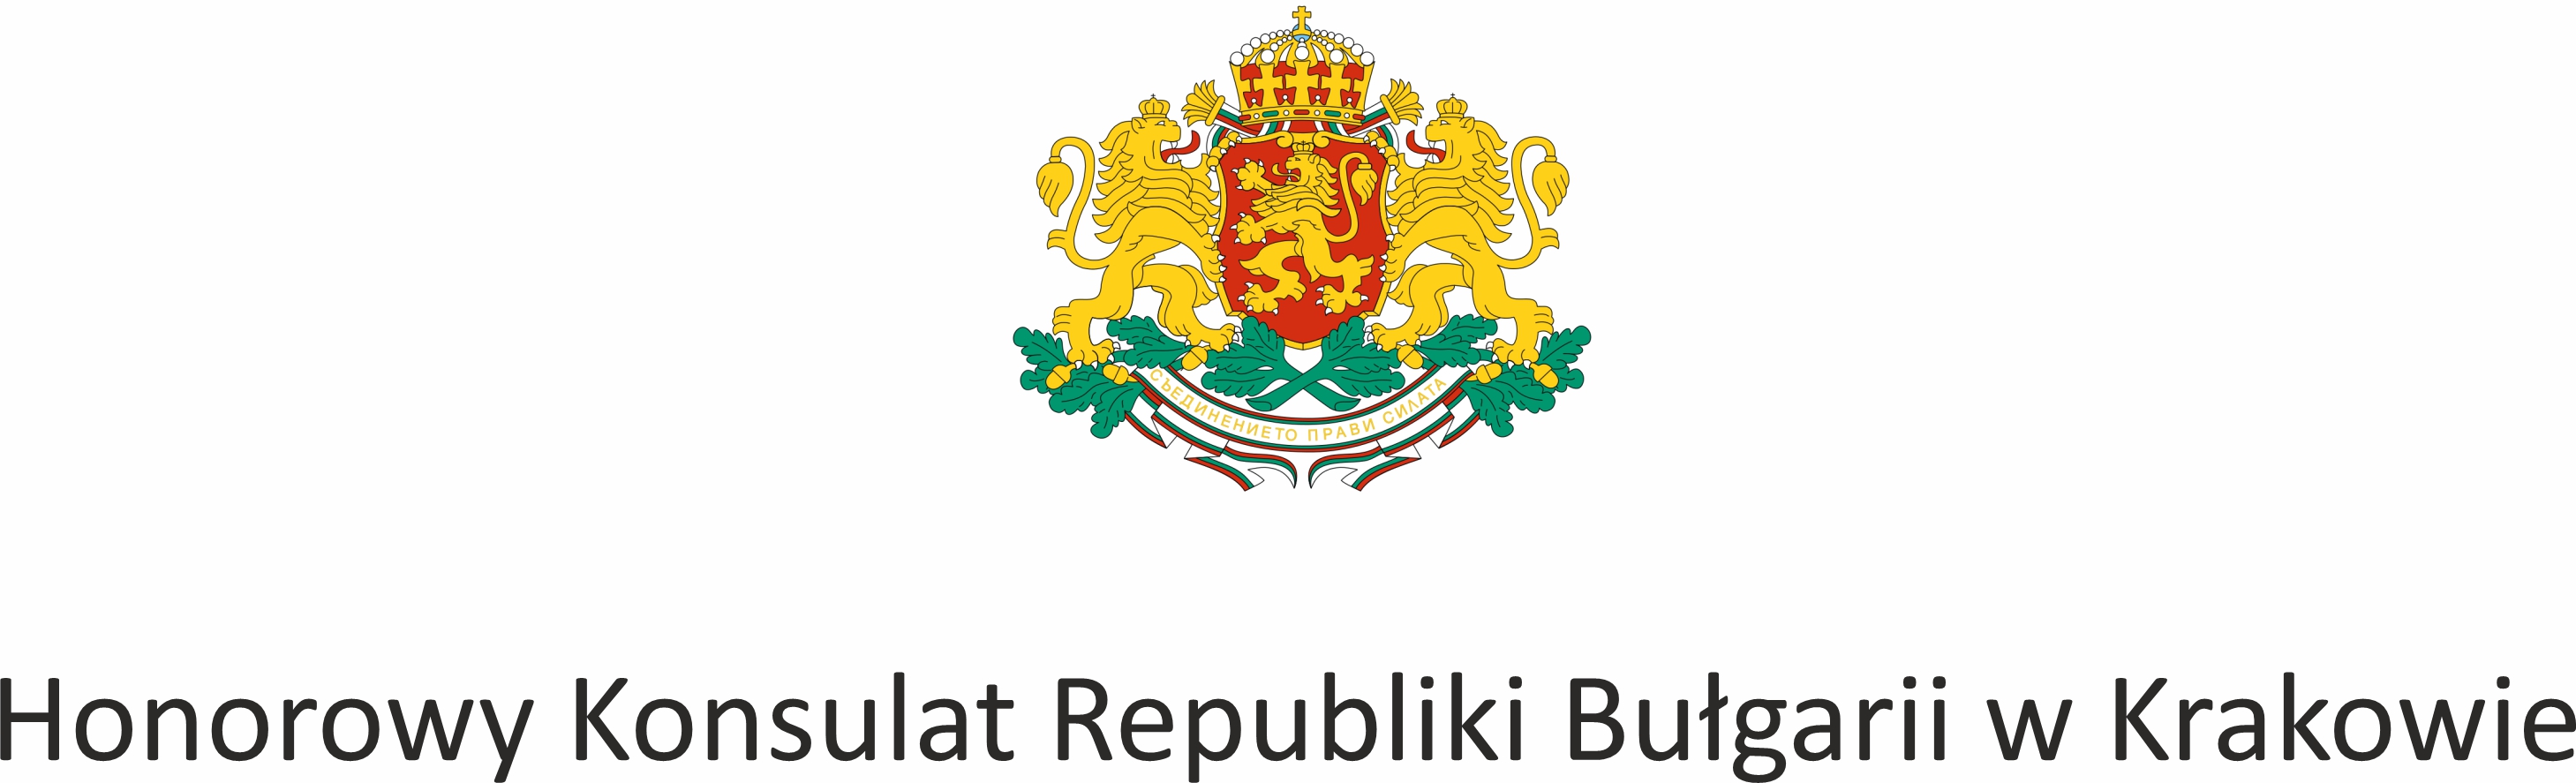 grafika: logo Honorowego Konsulatu Republiki Bułgarii w Krakowie